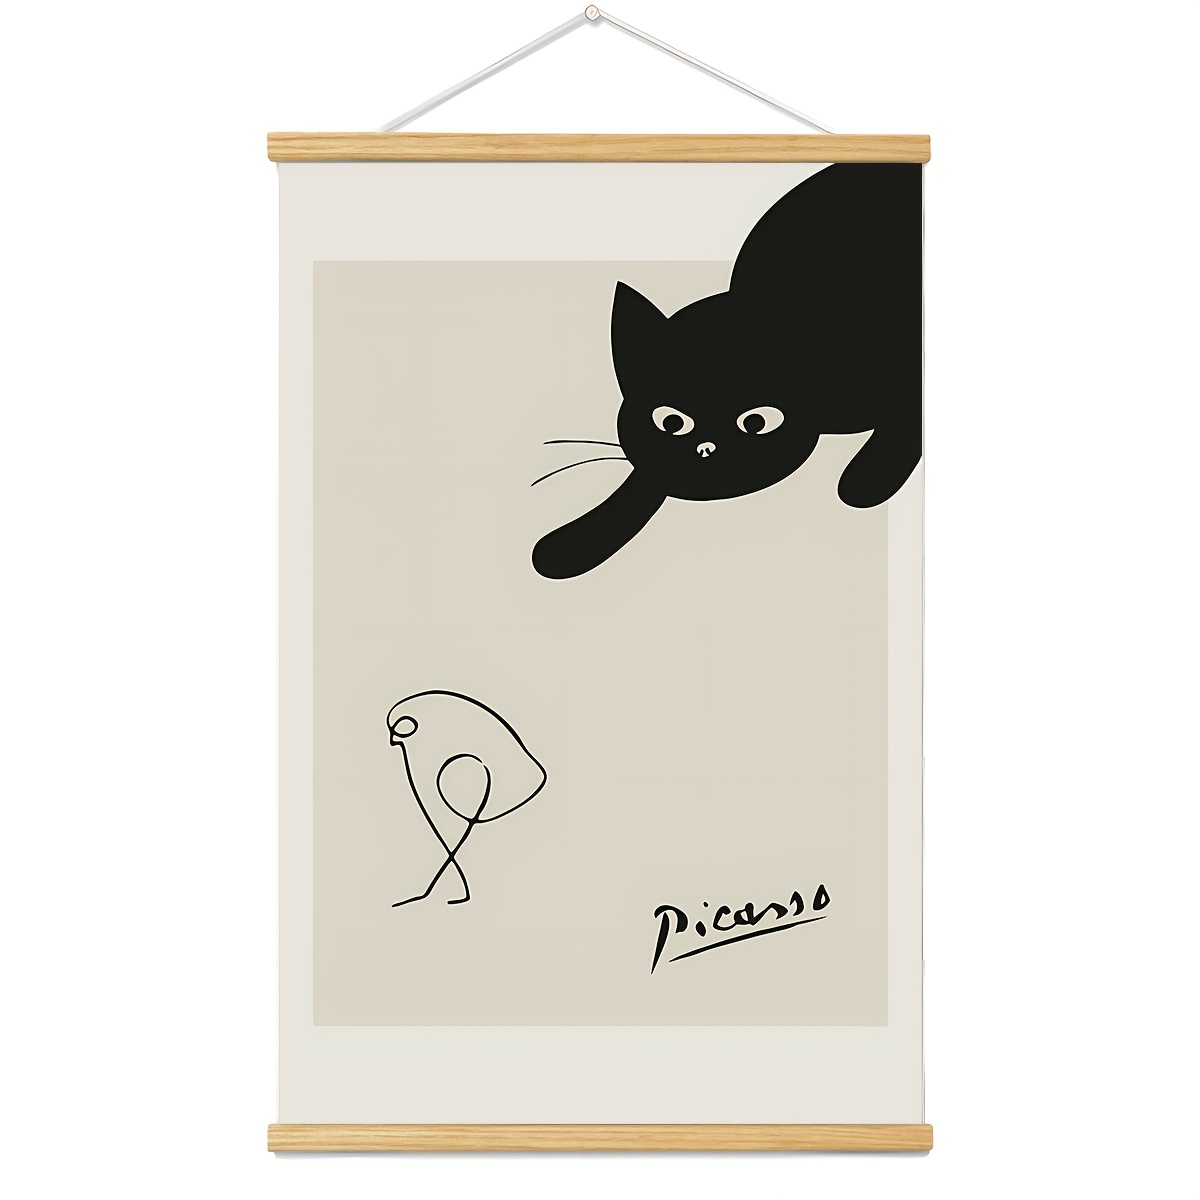 面白い黒猫の壁アート有名な絵画の中の猫のポスター古いギャラリーウォールデコレーションの写真、フレーム付きのキャンバスアート、オフィスホームデコレーションベッドルームリビングルームウォールデコレーション用、20*29インチ